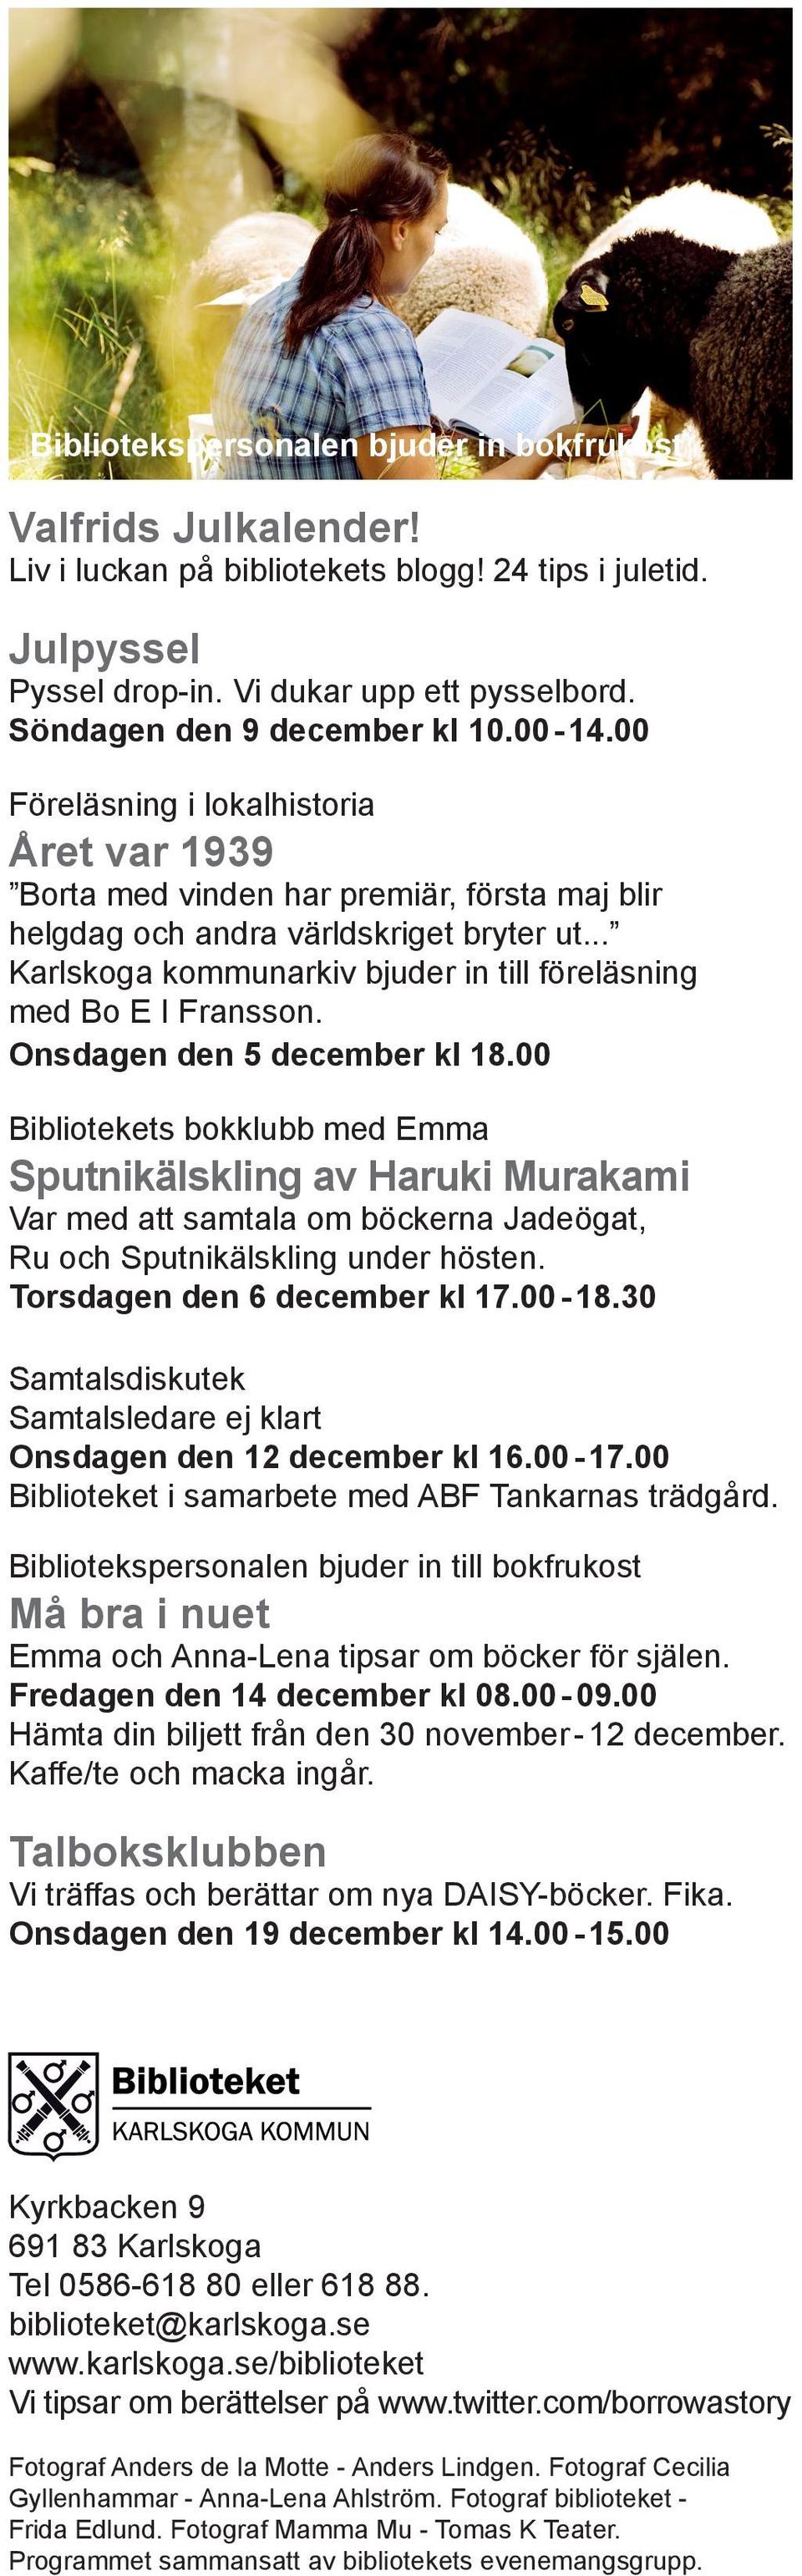 .. Karlskoga kommunarkiv bjuder in till föreläsning med Bo E I Fransson. Onsdagen den 5 december kl 18.